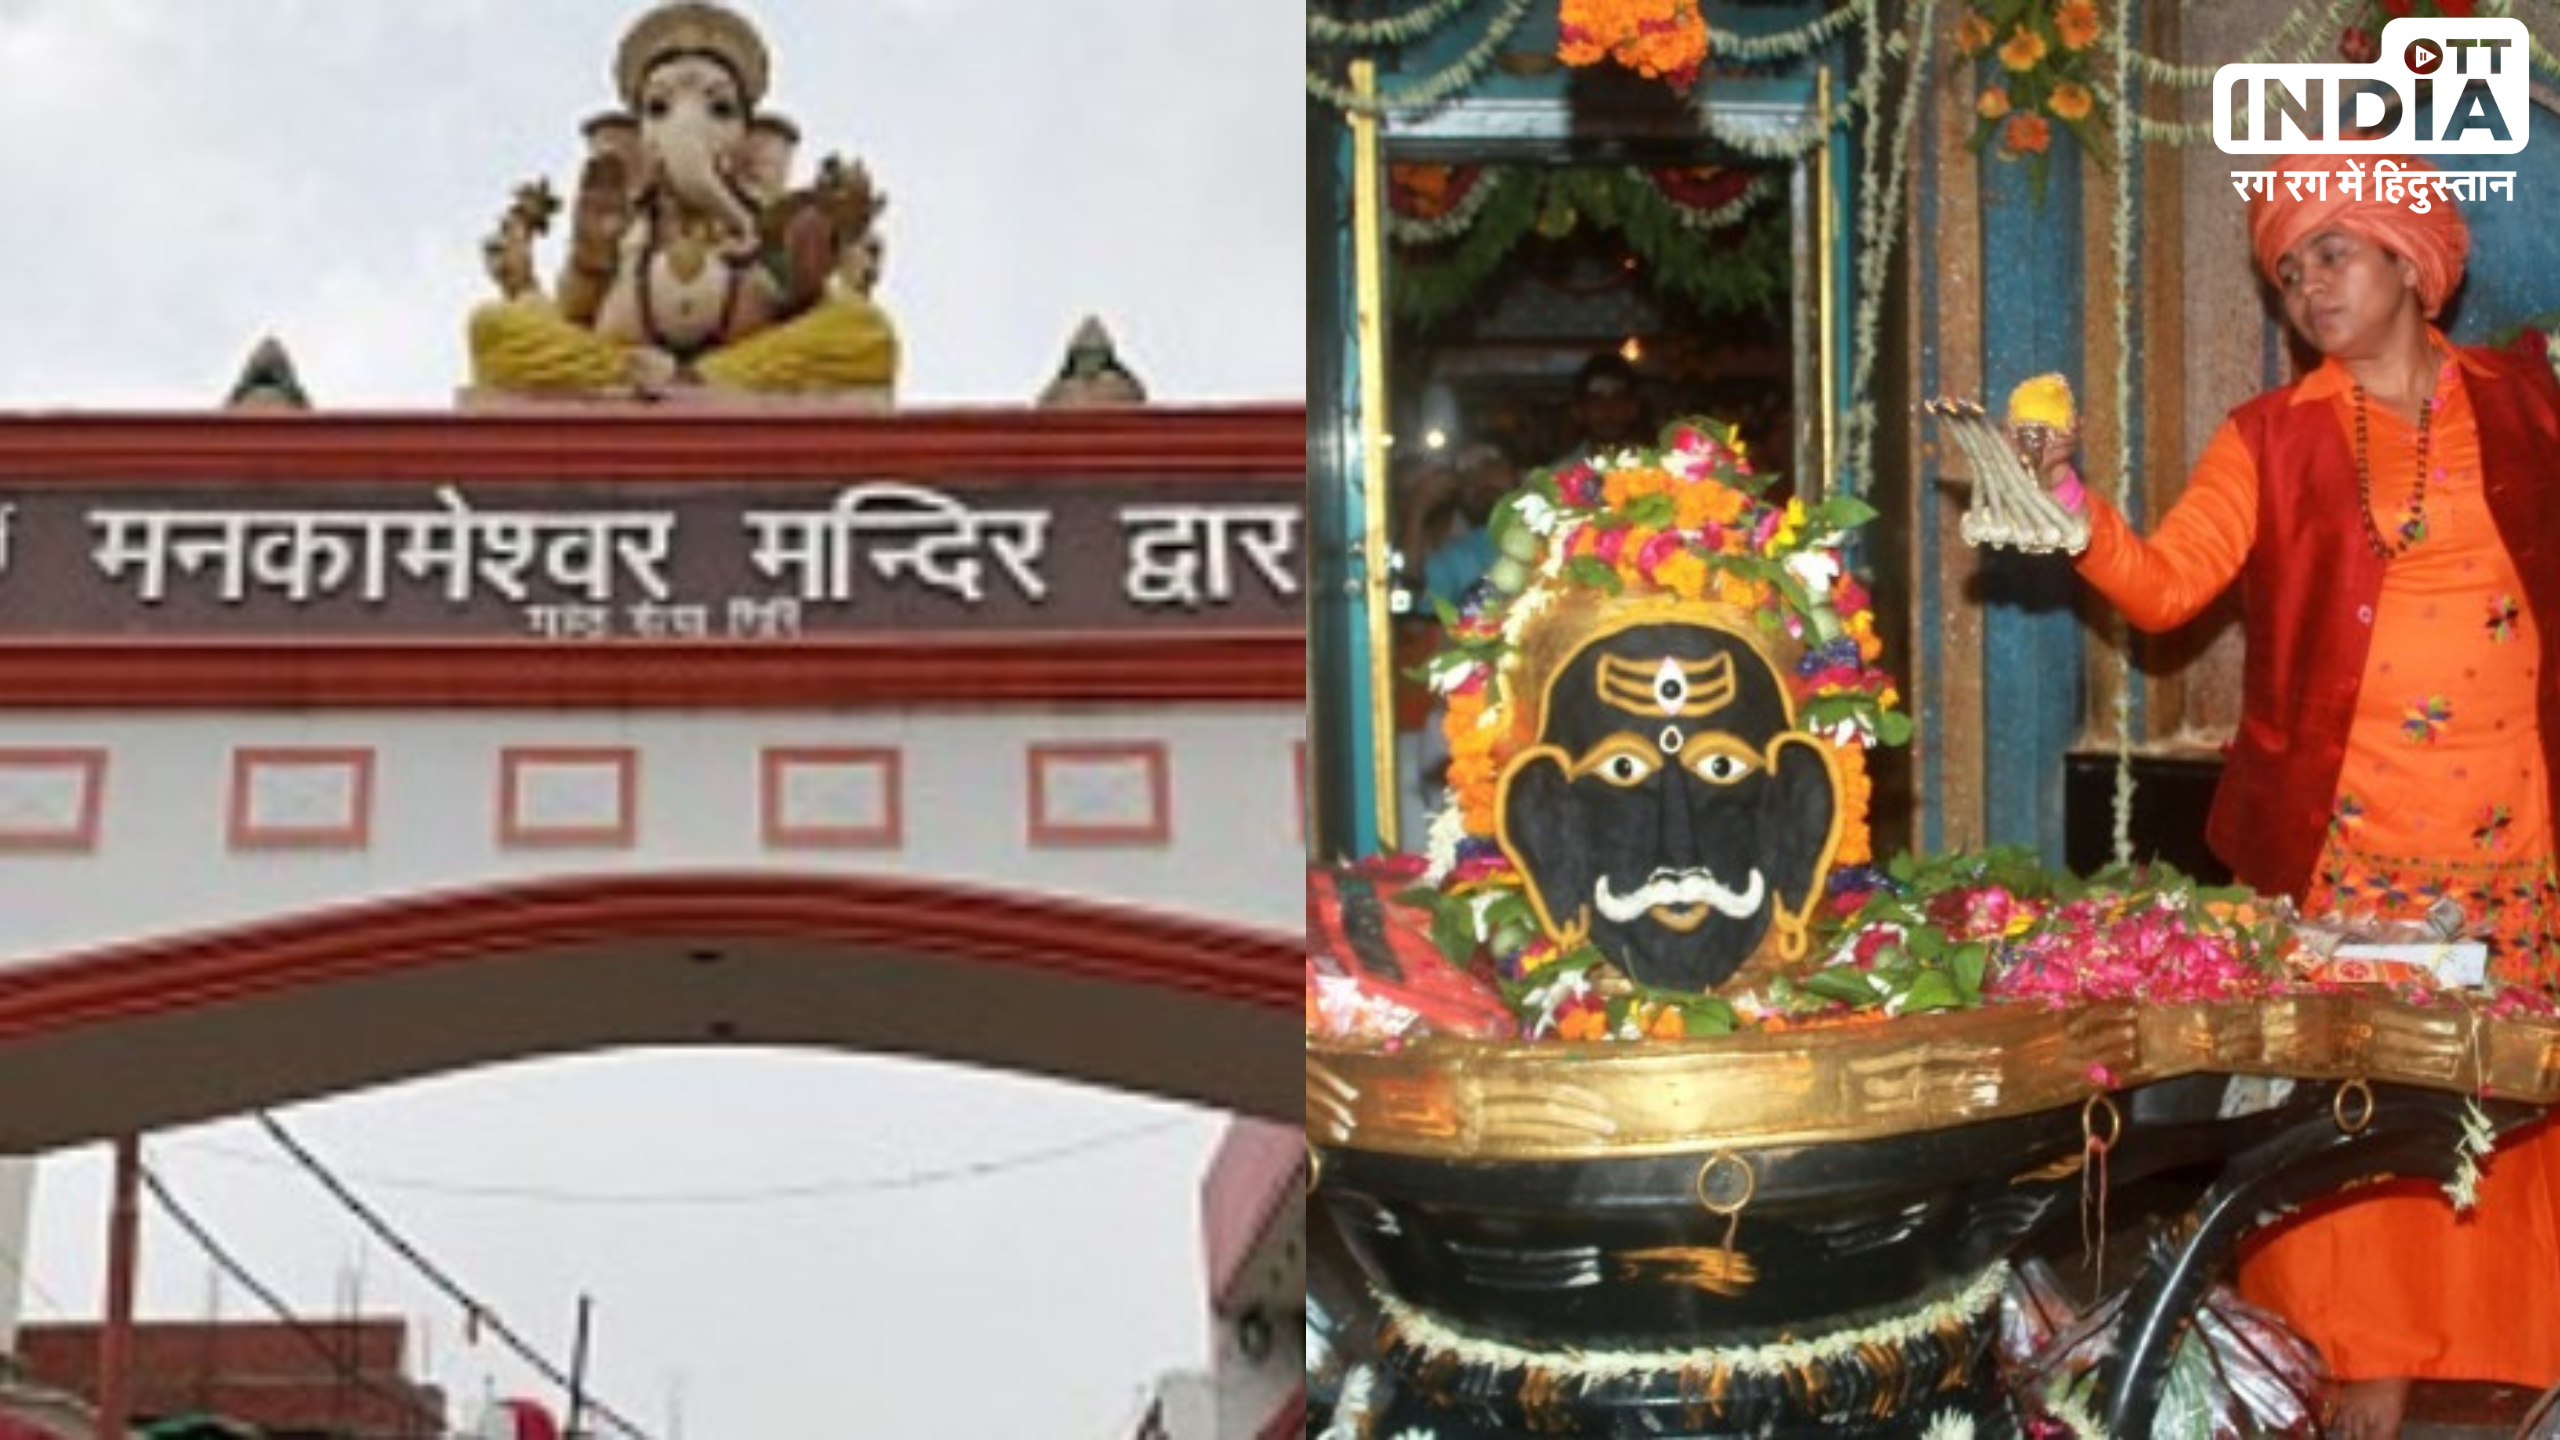 Mankameshwar Mandir Lucknow:  इस शिवरात्रि आइये लखनऊ के मनकामेश्वर मंदिर , होगी हर मनोकामना पूर्ण